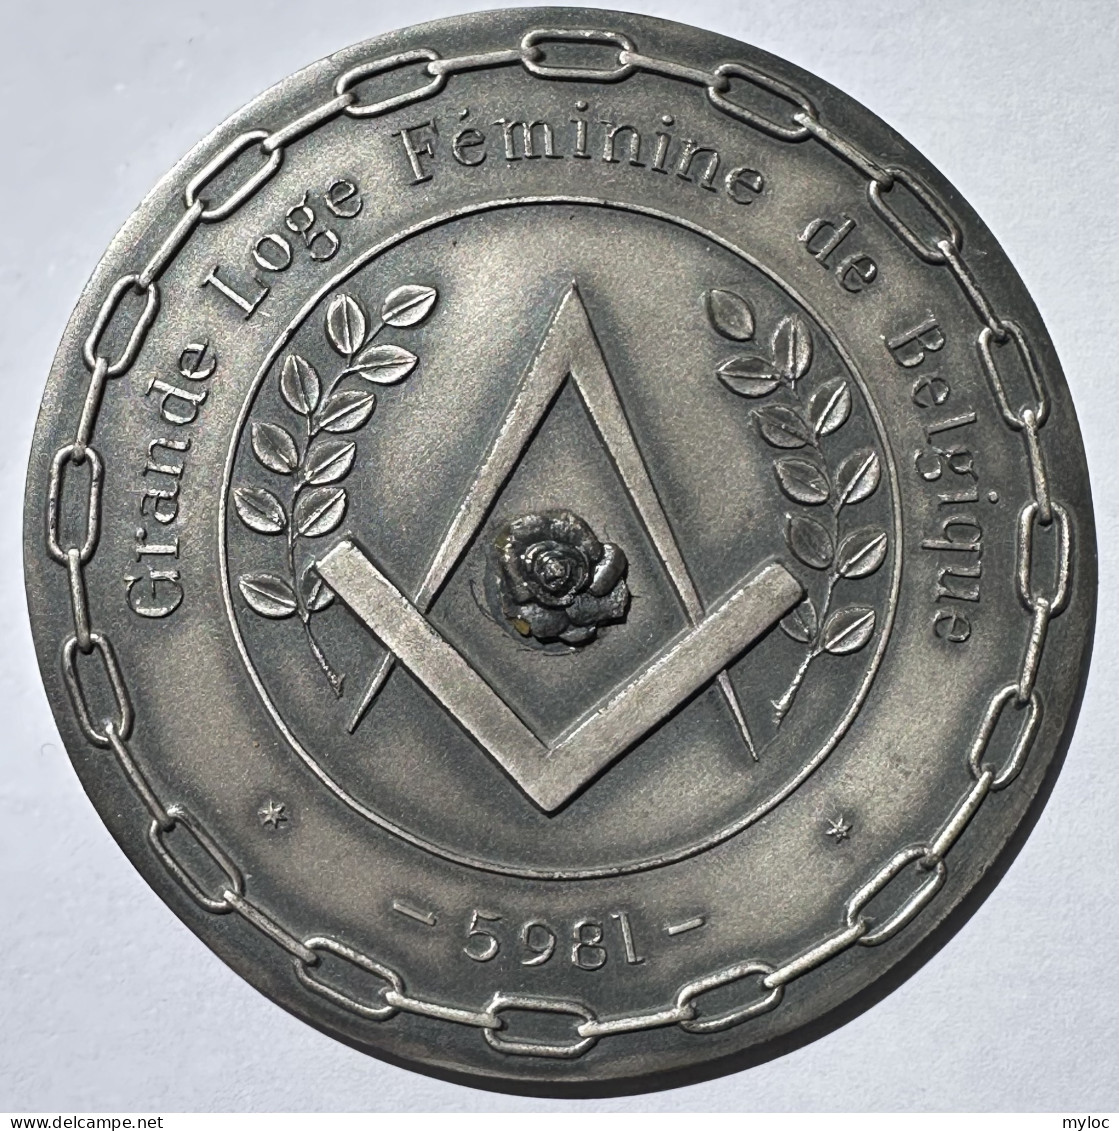 Franc-Maçonnerie. Médaille. Grande Loge Féminine De Belgique. Souvenir De La Création De L'Obédience 17/10/1981.  - Firma's